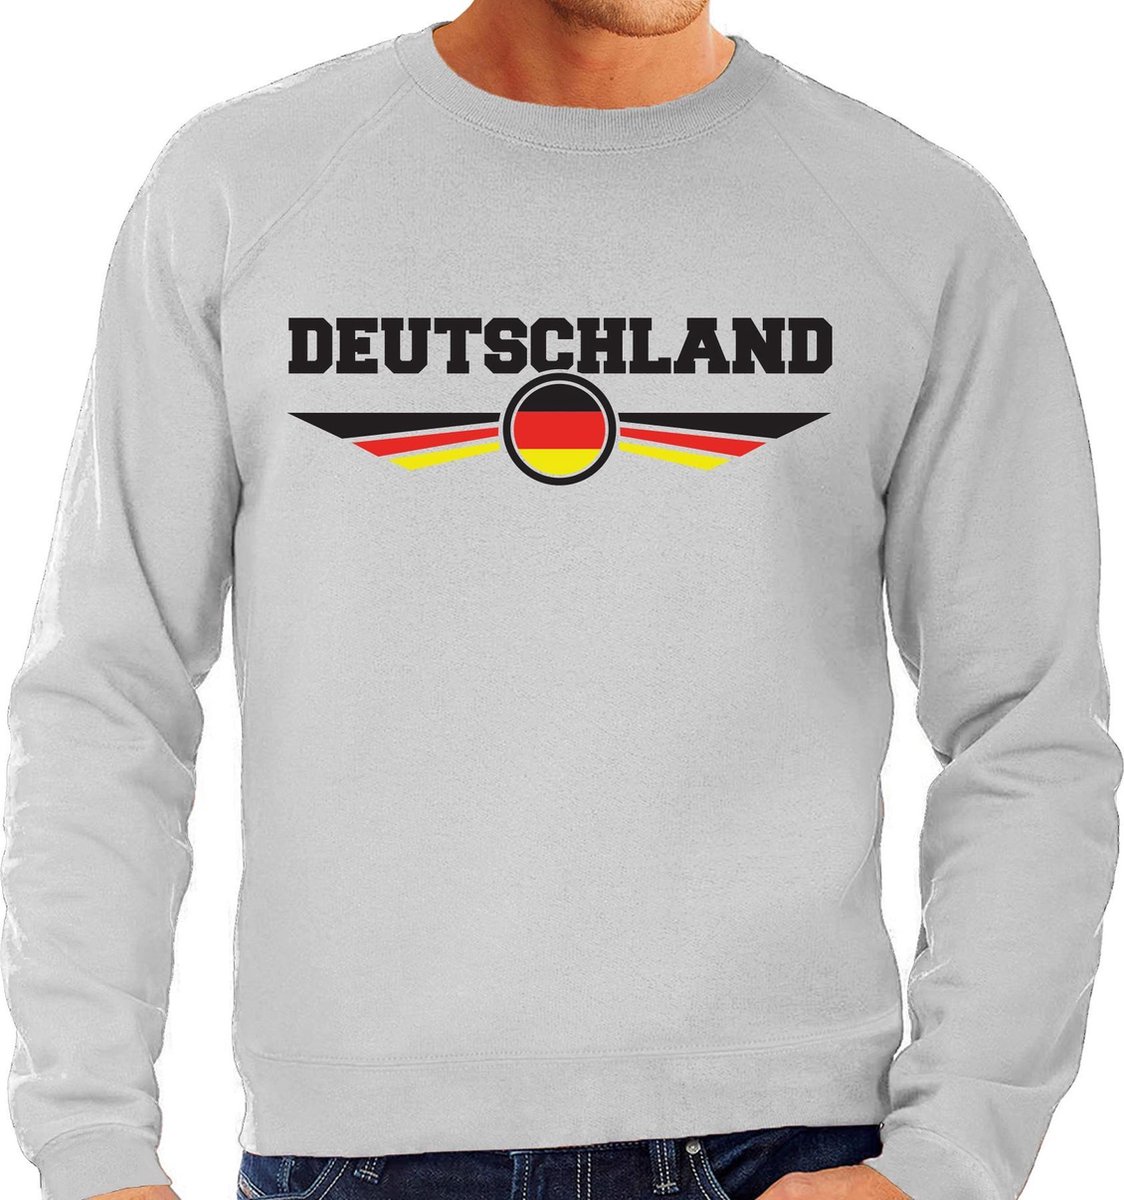 Duitsland / Deutschland landen sweater / trui grijs heren S